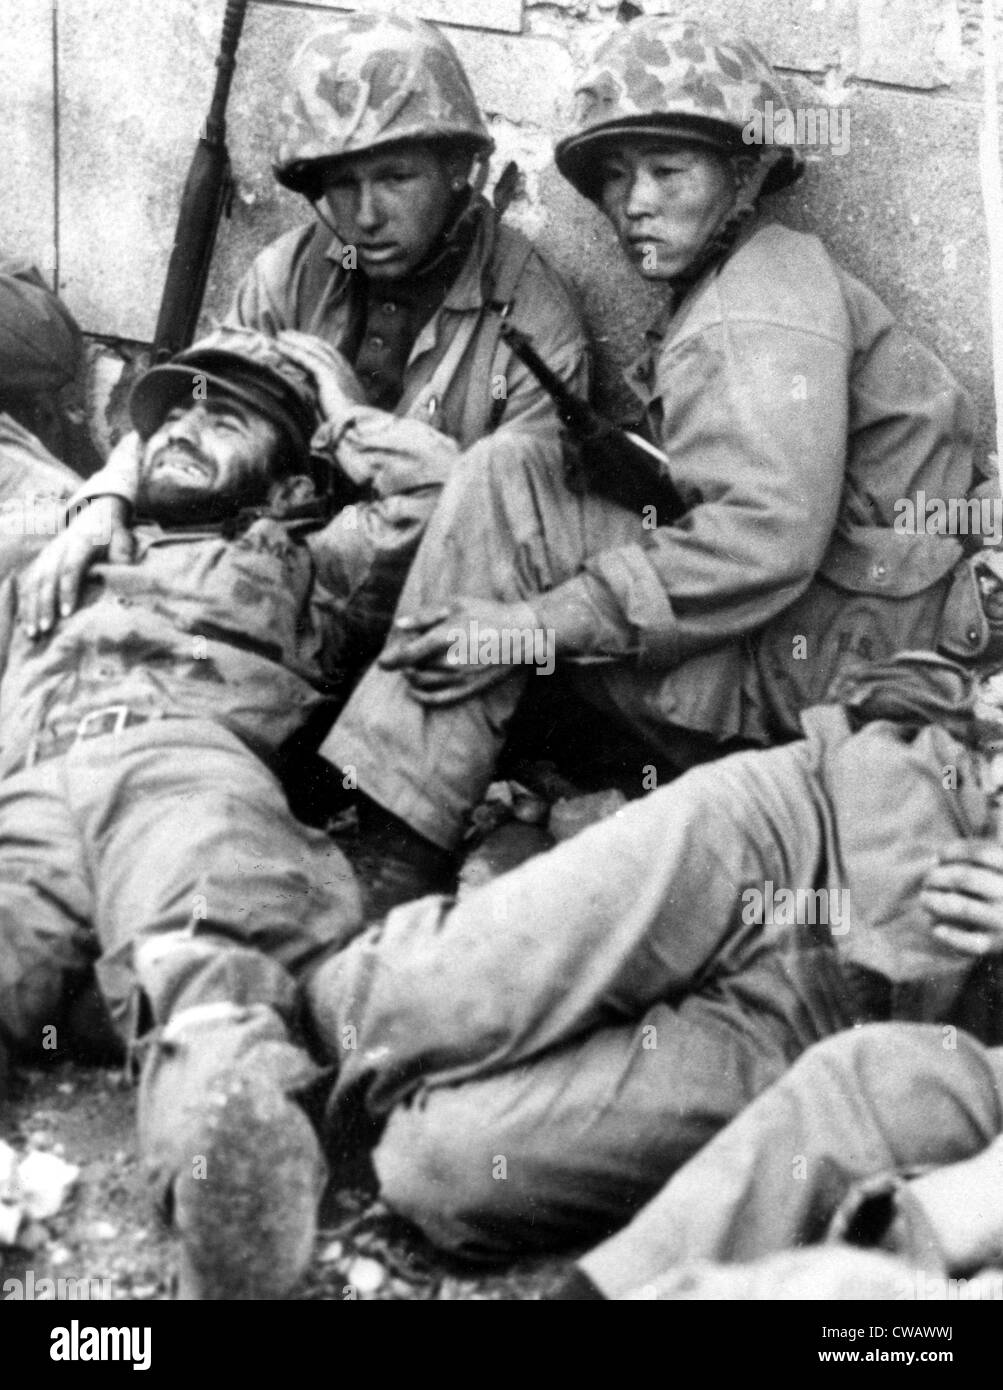 Korean War: exhausted Marines, Korea, 10-01-50. Courtesy Everett/CSU Archives Stock Photo